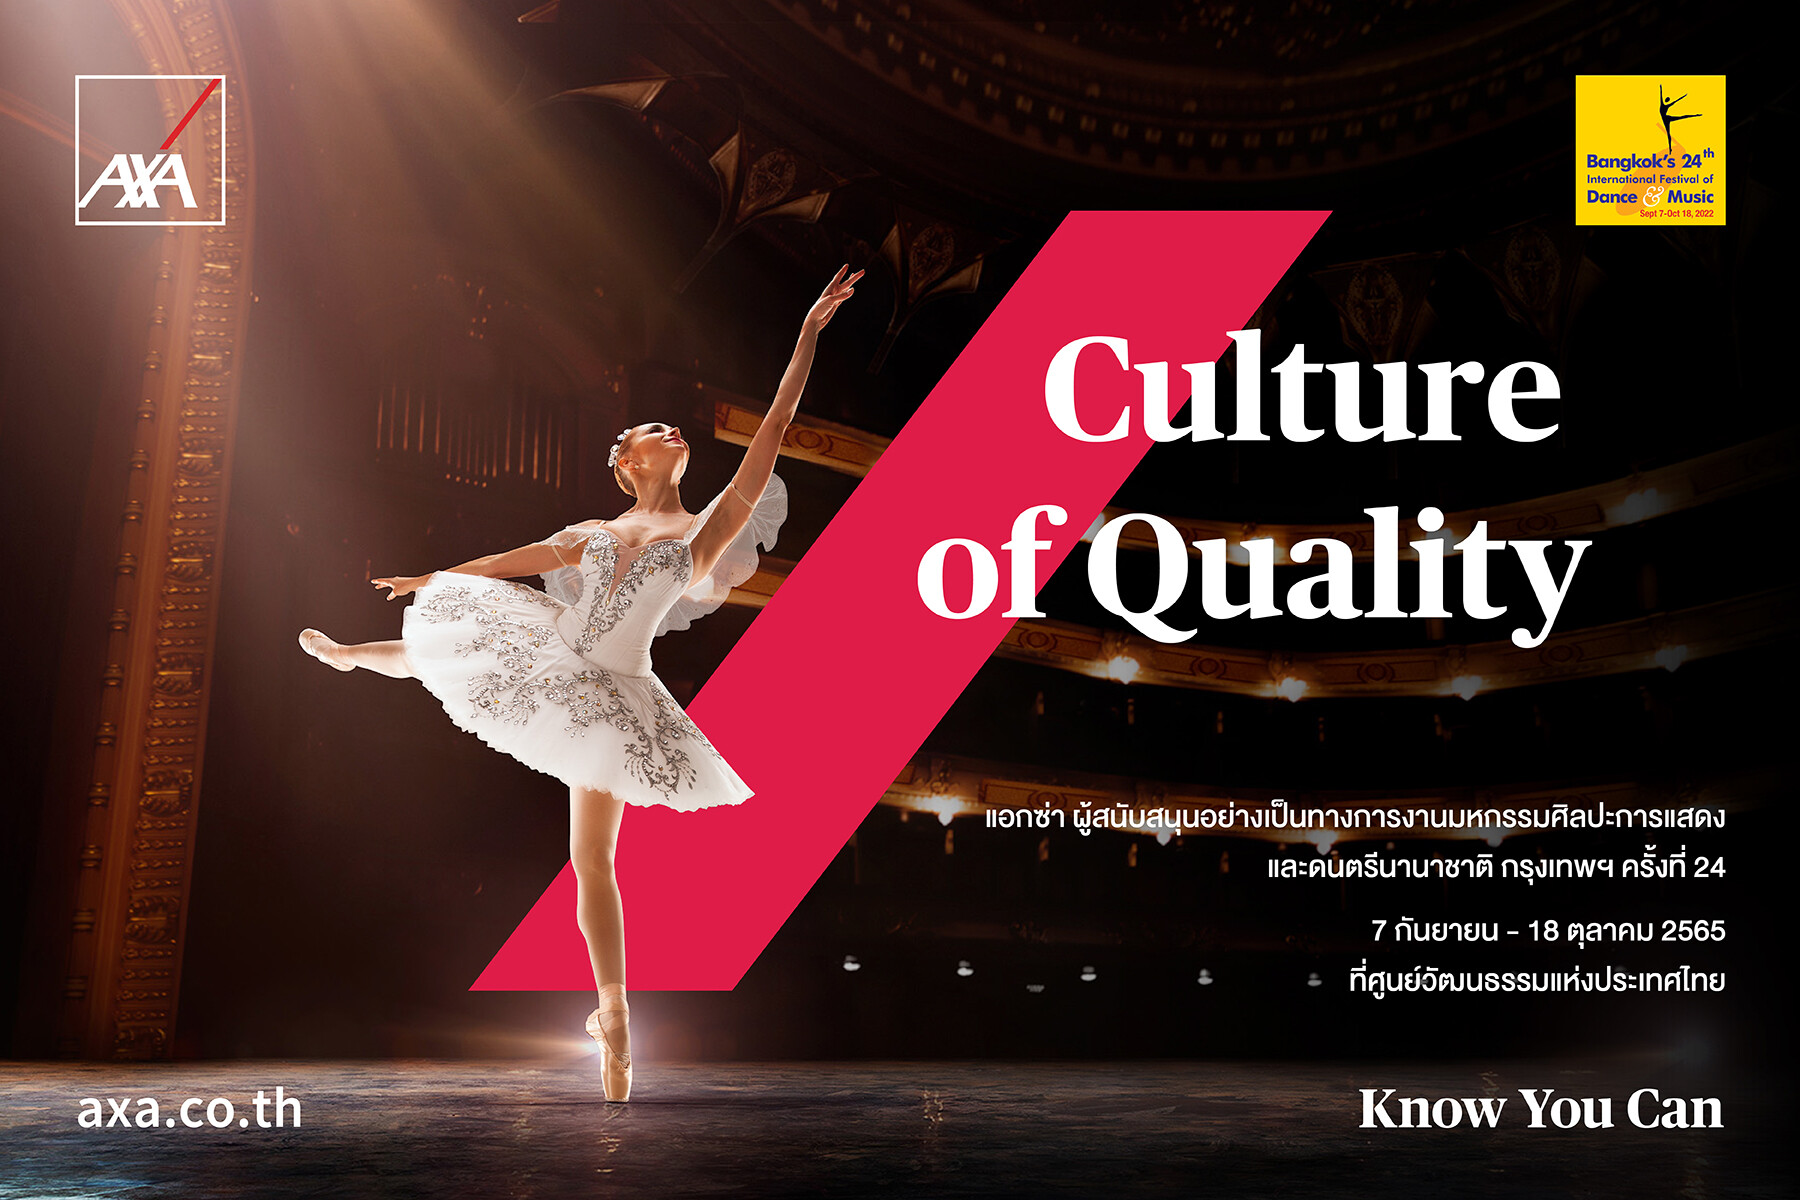 แอกซ่าร่วมสนับสนุน "วัฒนธรรมแห่งคุณภาพ" ในฐานะพันธมิตรประกันภัยอย่างเป็นทางการในงานมหกรรมศิลปะการแสดงและดนตรีนานาชาติ กรุงเทพฯ ครั้งที่ 24